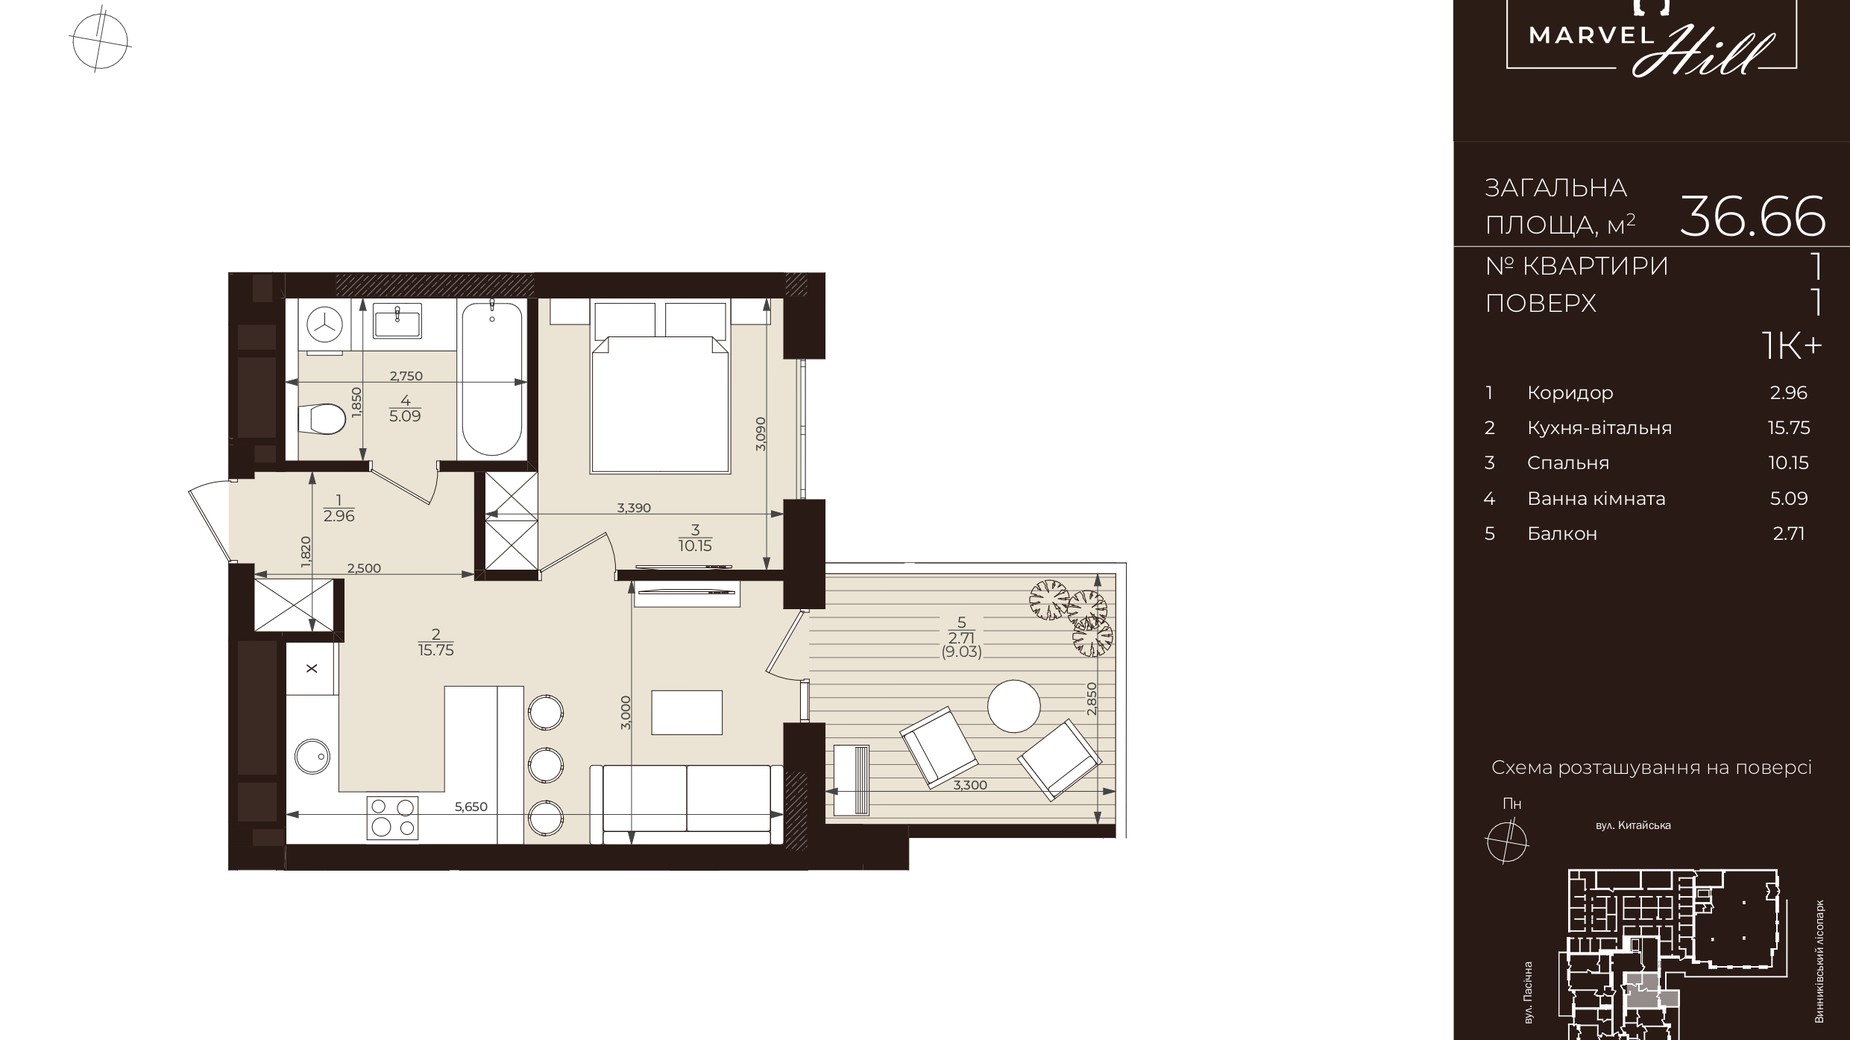 Планировка 1-комнатной квартиры в ЖК Marvel Hill 36.66 м², фото 710206